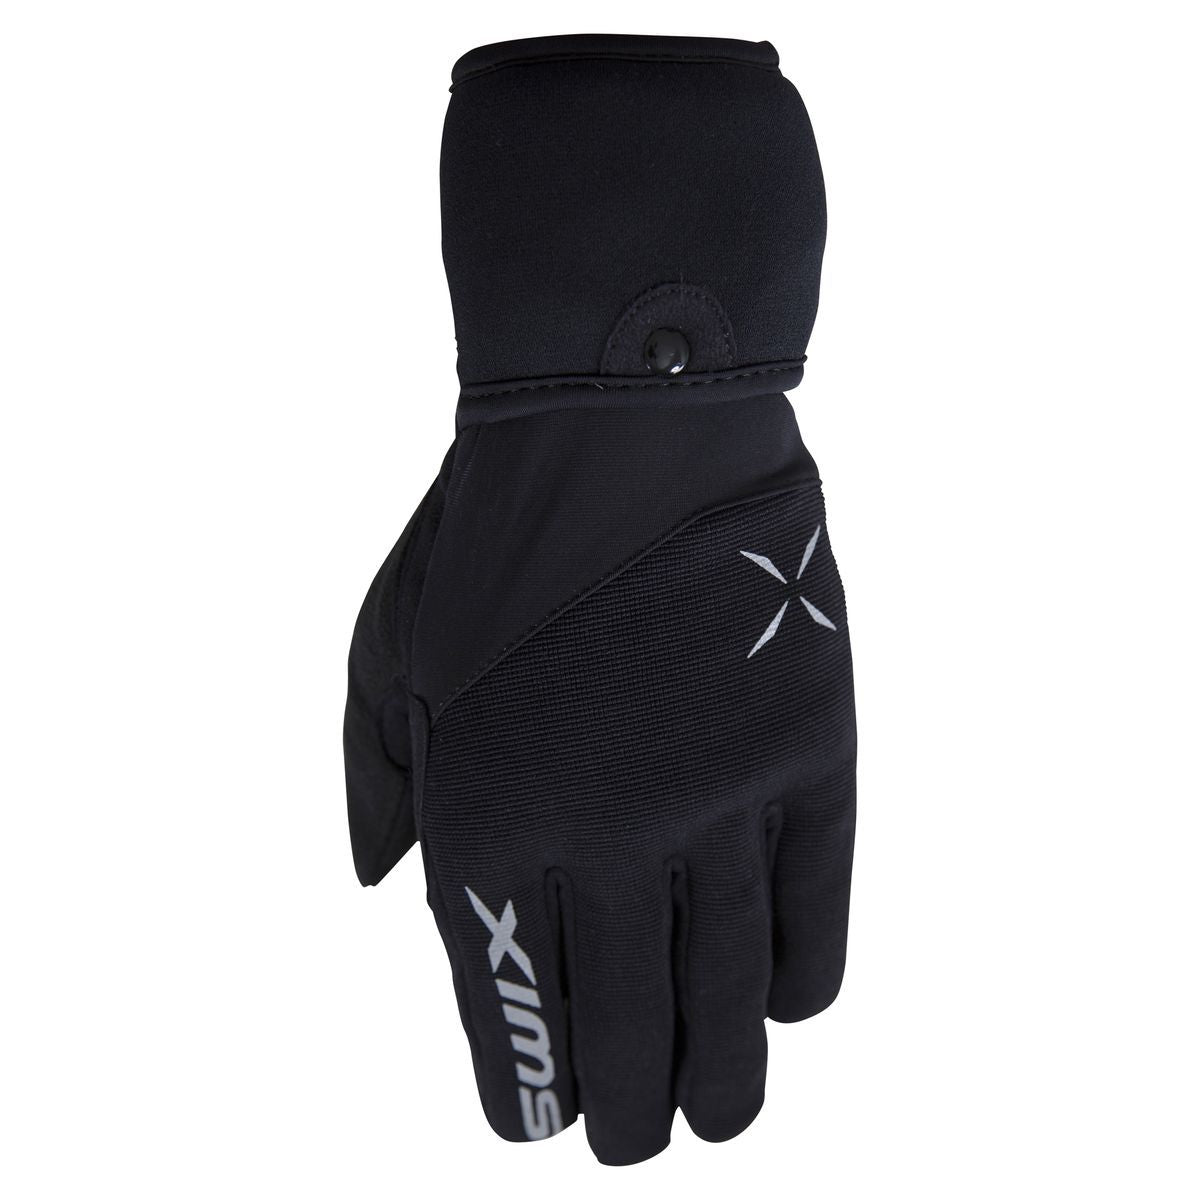 Atlasx - Men's Glove Mitt